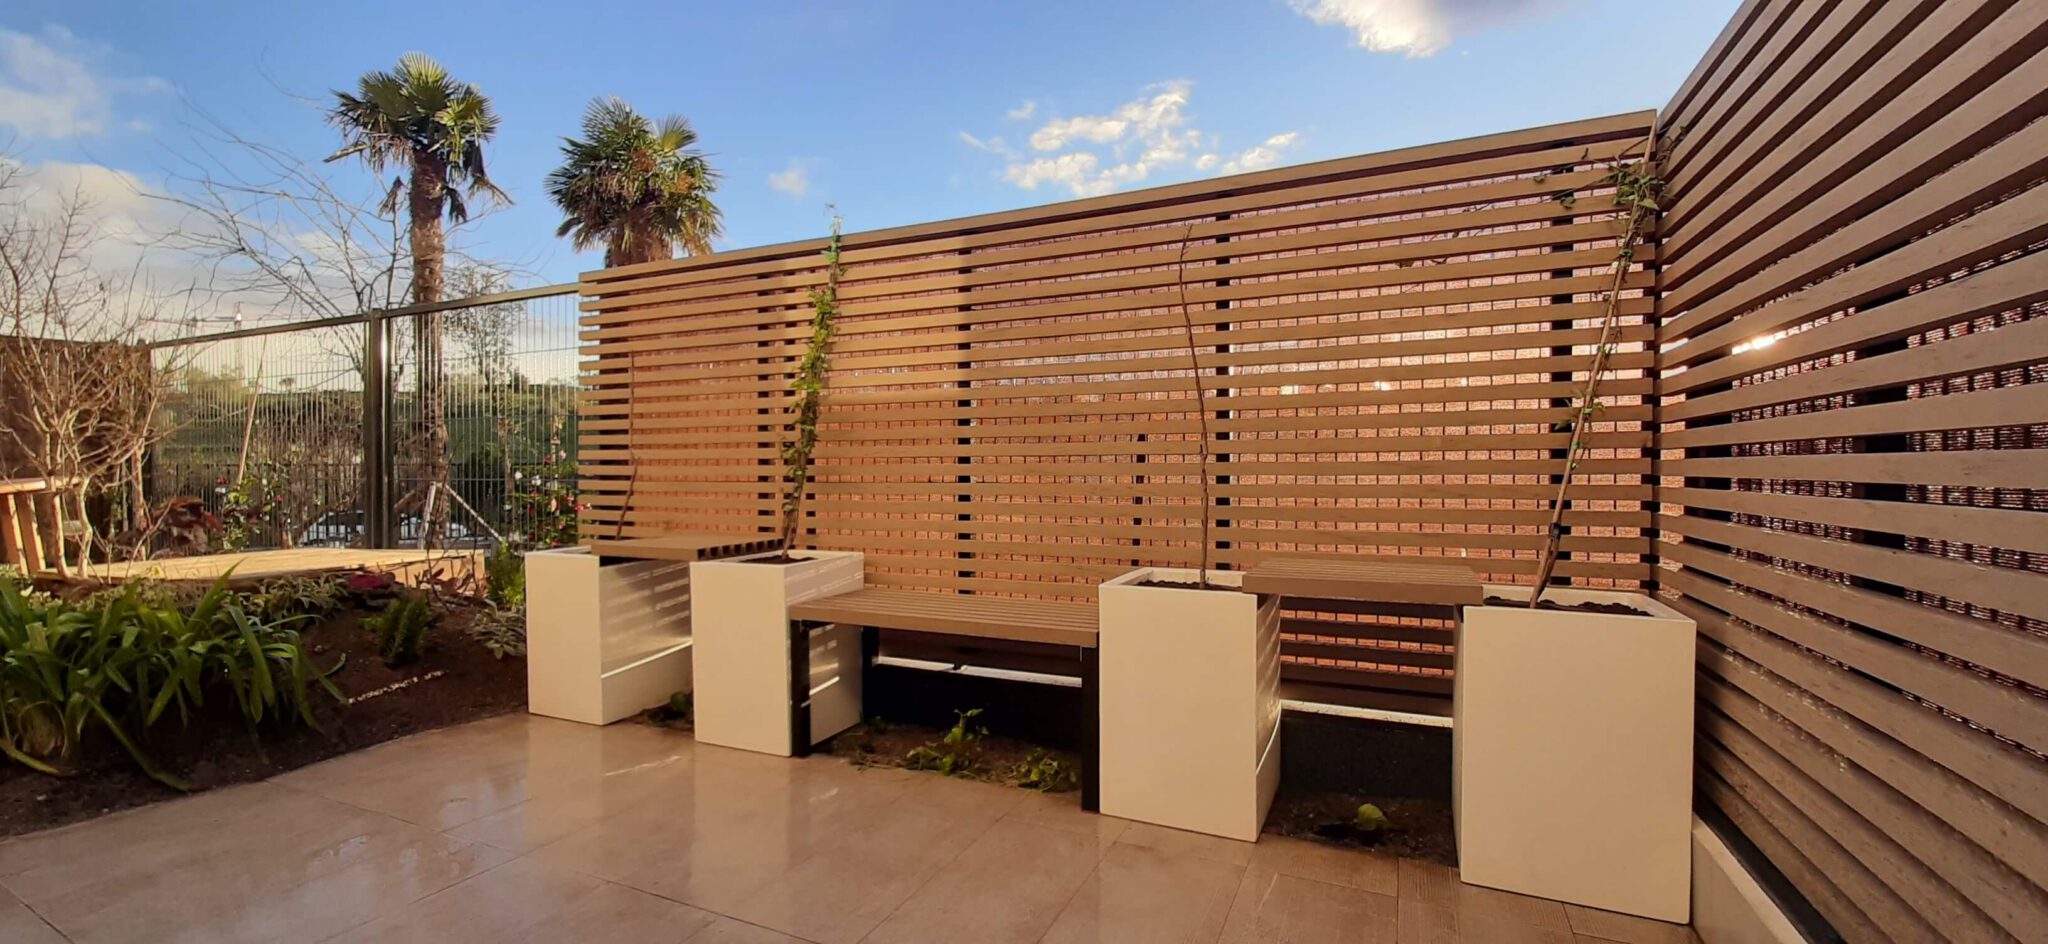 Tipos de Vallas para jardín en madera tecnológica - Neoture, Madera  Composite para Exterior